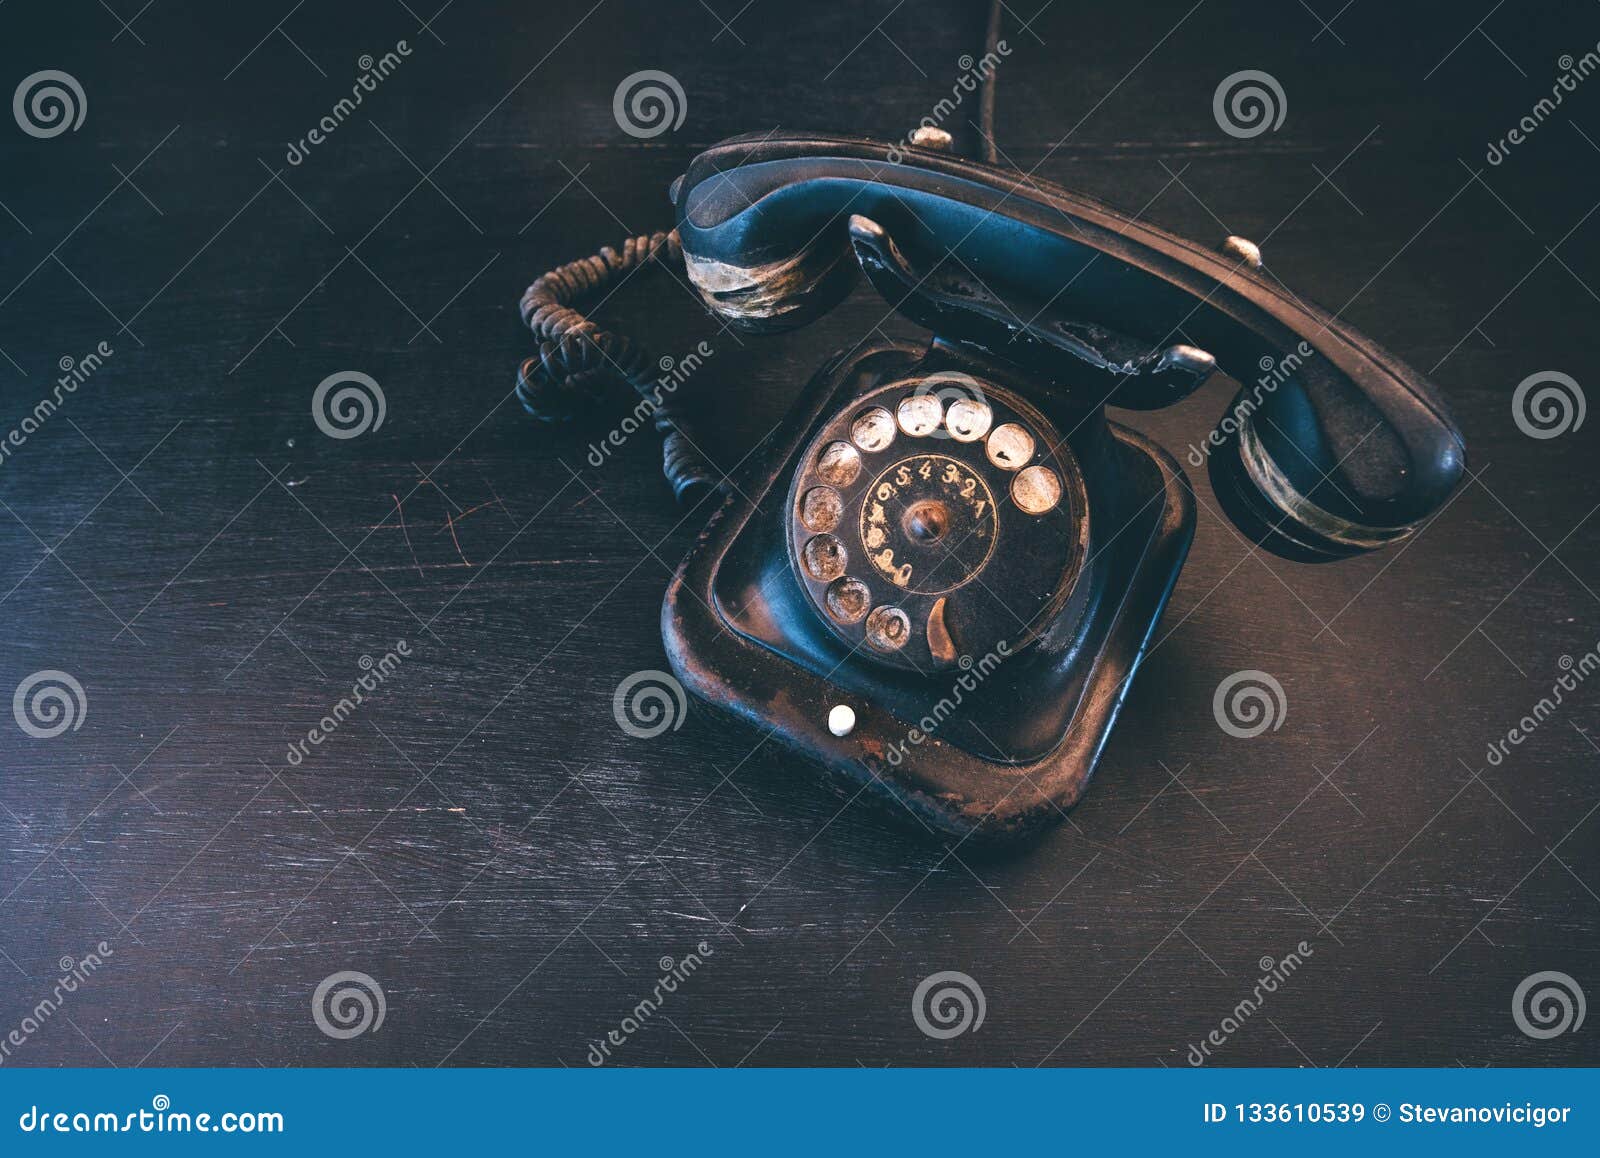 Black Vintage Landline Telephone Stock Image - Image of phone, aged ...